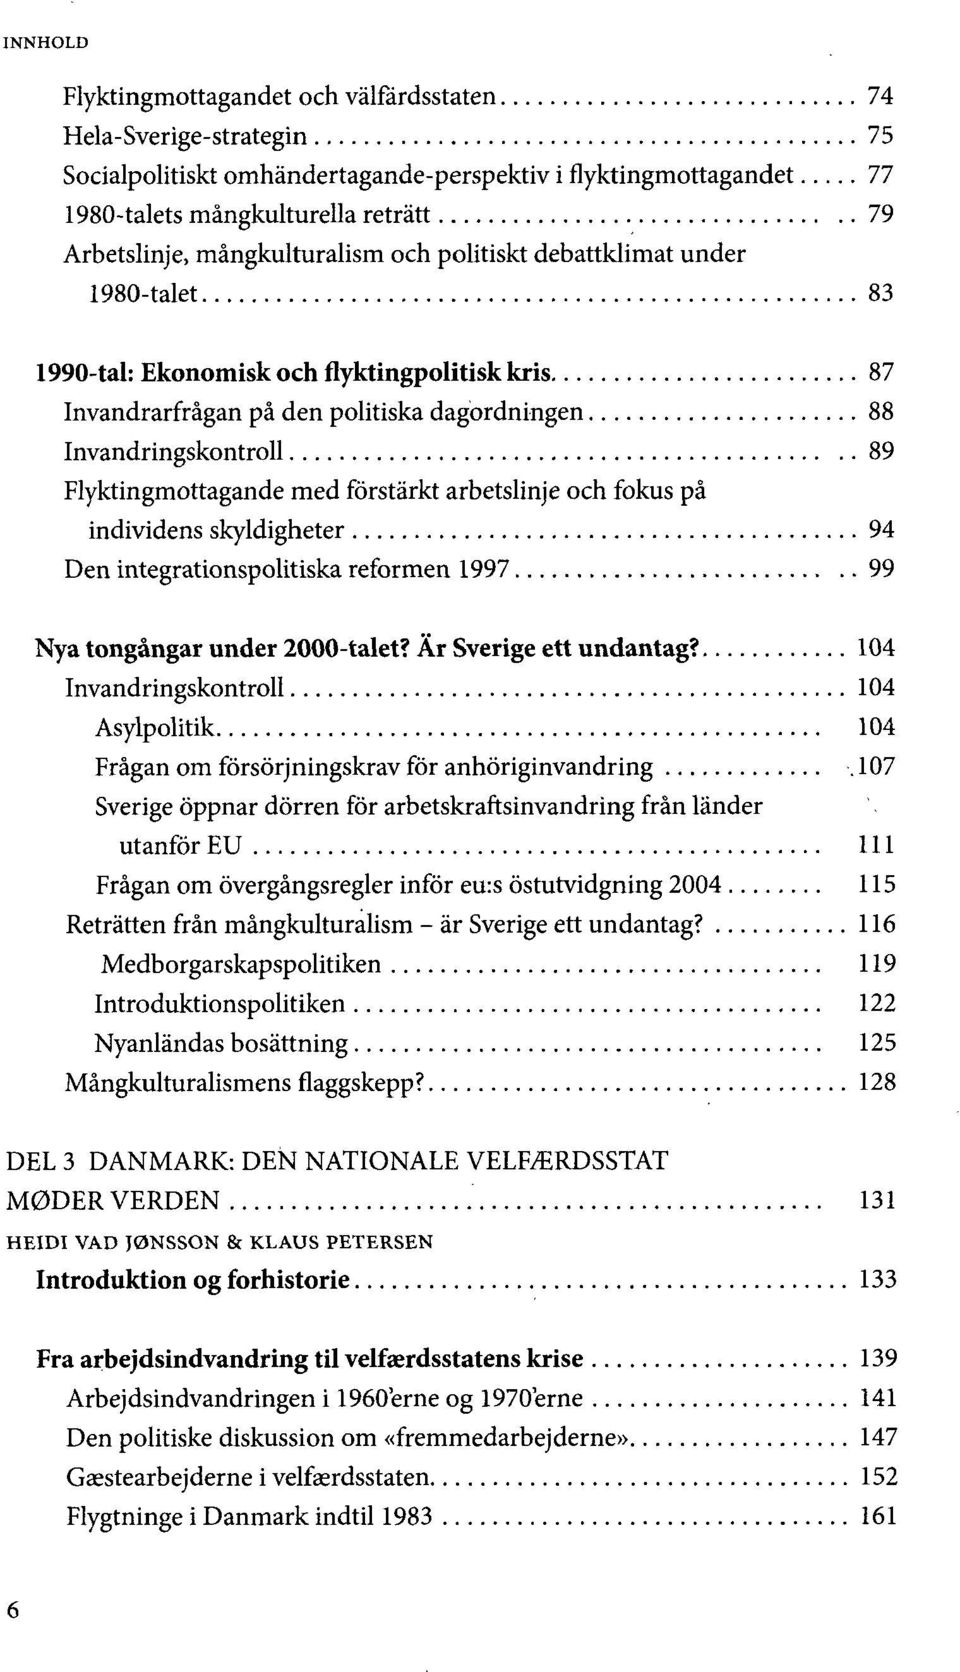 Flyktingmottagande med forstårkt arbetslinje och fokus på individens skyldigheter 94 Den integrationspolitiska reformen 1997 99 Nya tongångar under 2000-talet? År Sverige ett undantag?